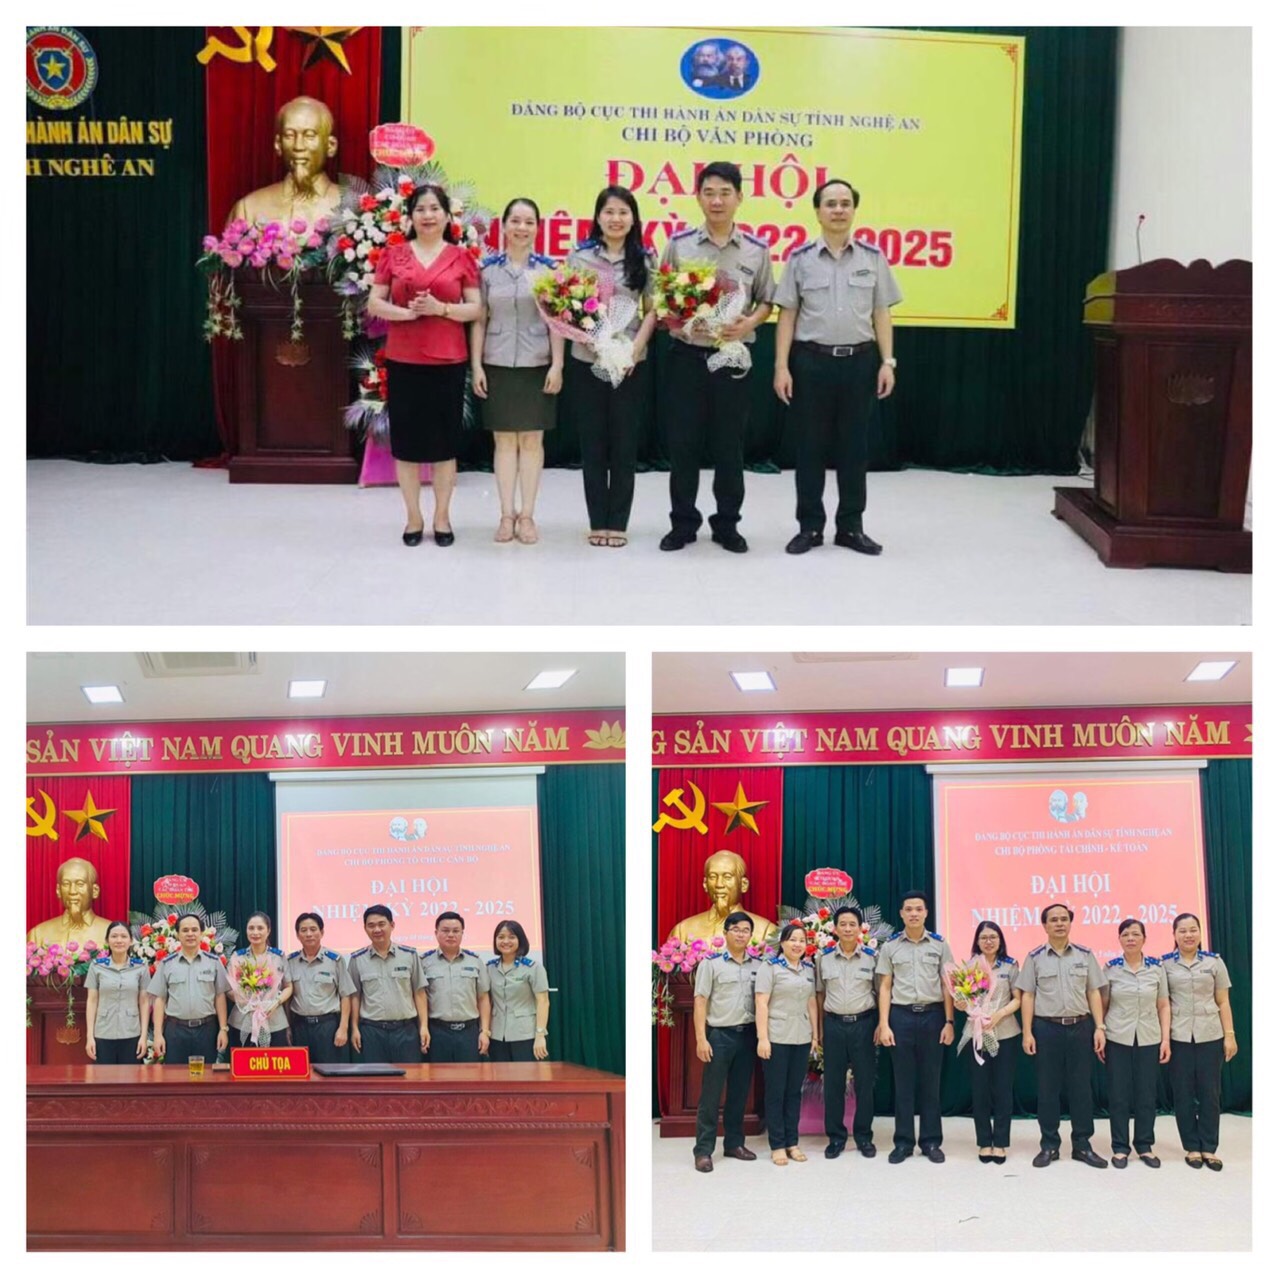 Các Chi bộ trực thuộc Đảng bộ Cục THADS tỉnh Nghệ An tổ chức thành công Đại hội Chi bộ nhiệm kỳ 2022-2025